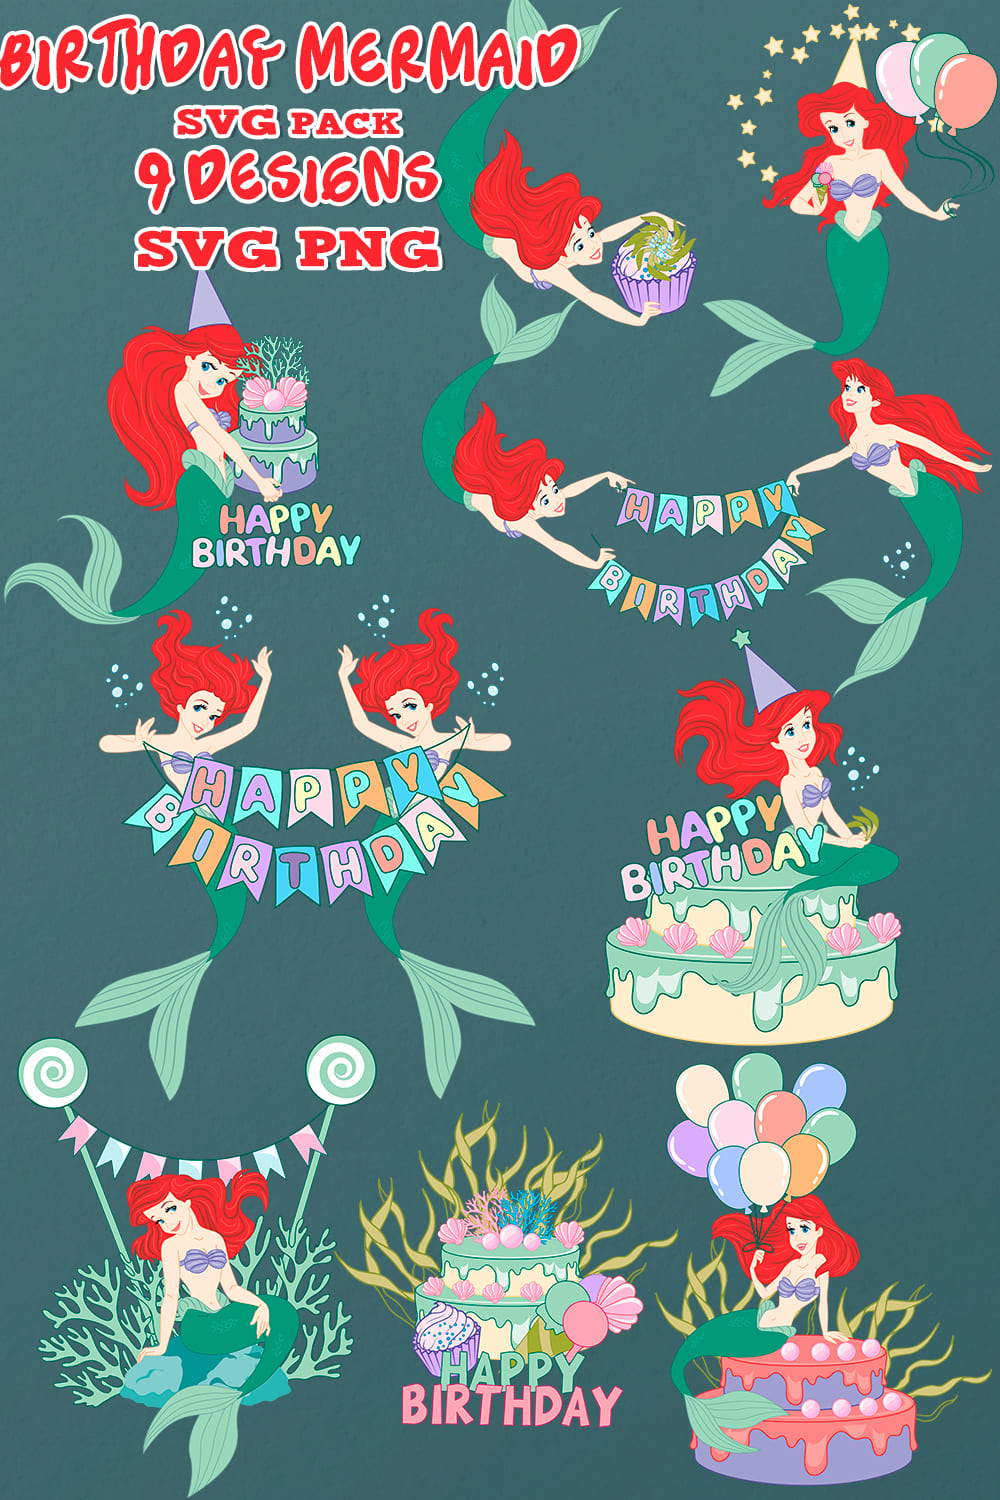 Birthday Mermaid Svg - Pinterest.